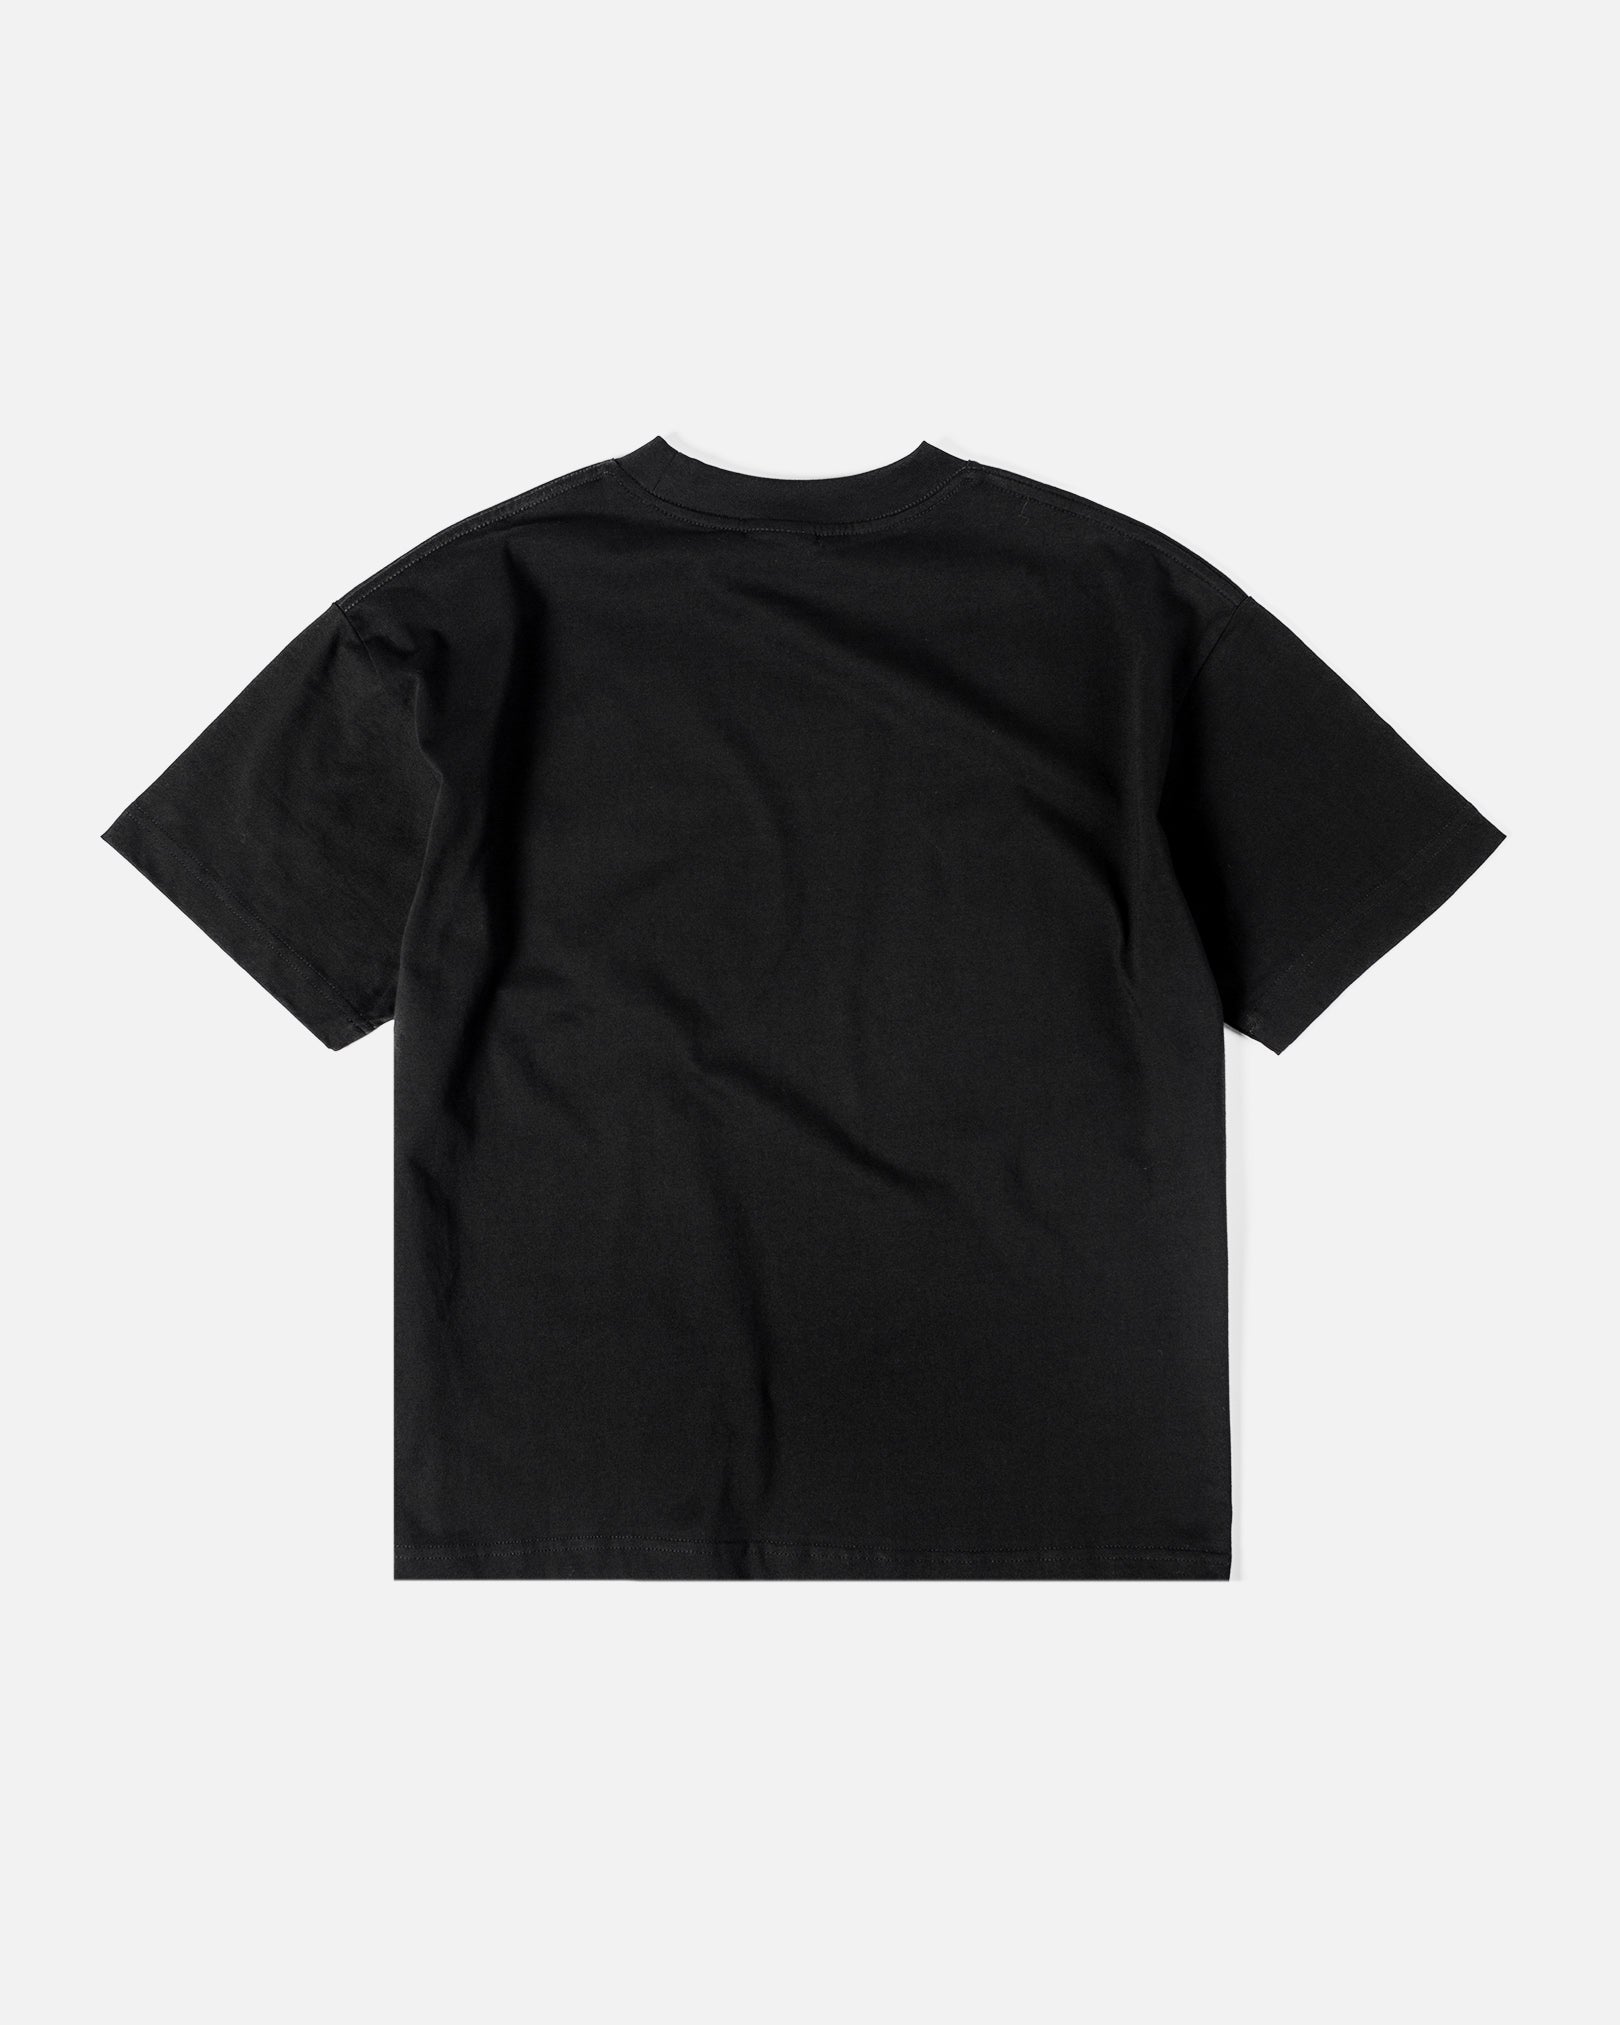 candice-boxy-tshirt-logo-black-back